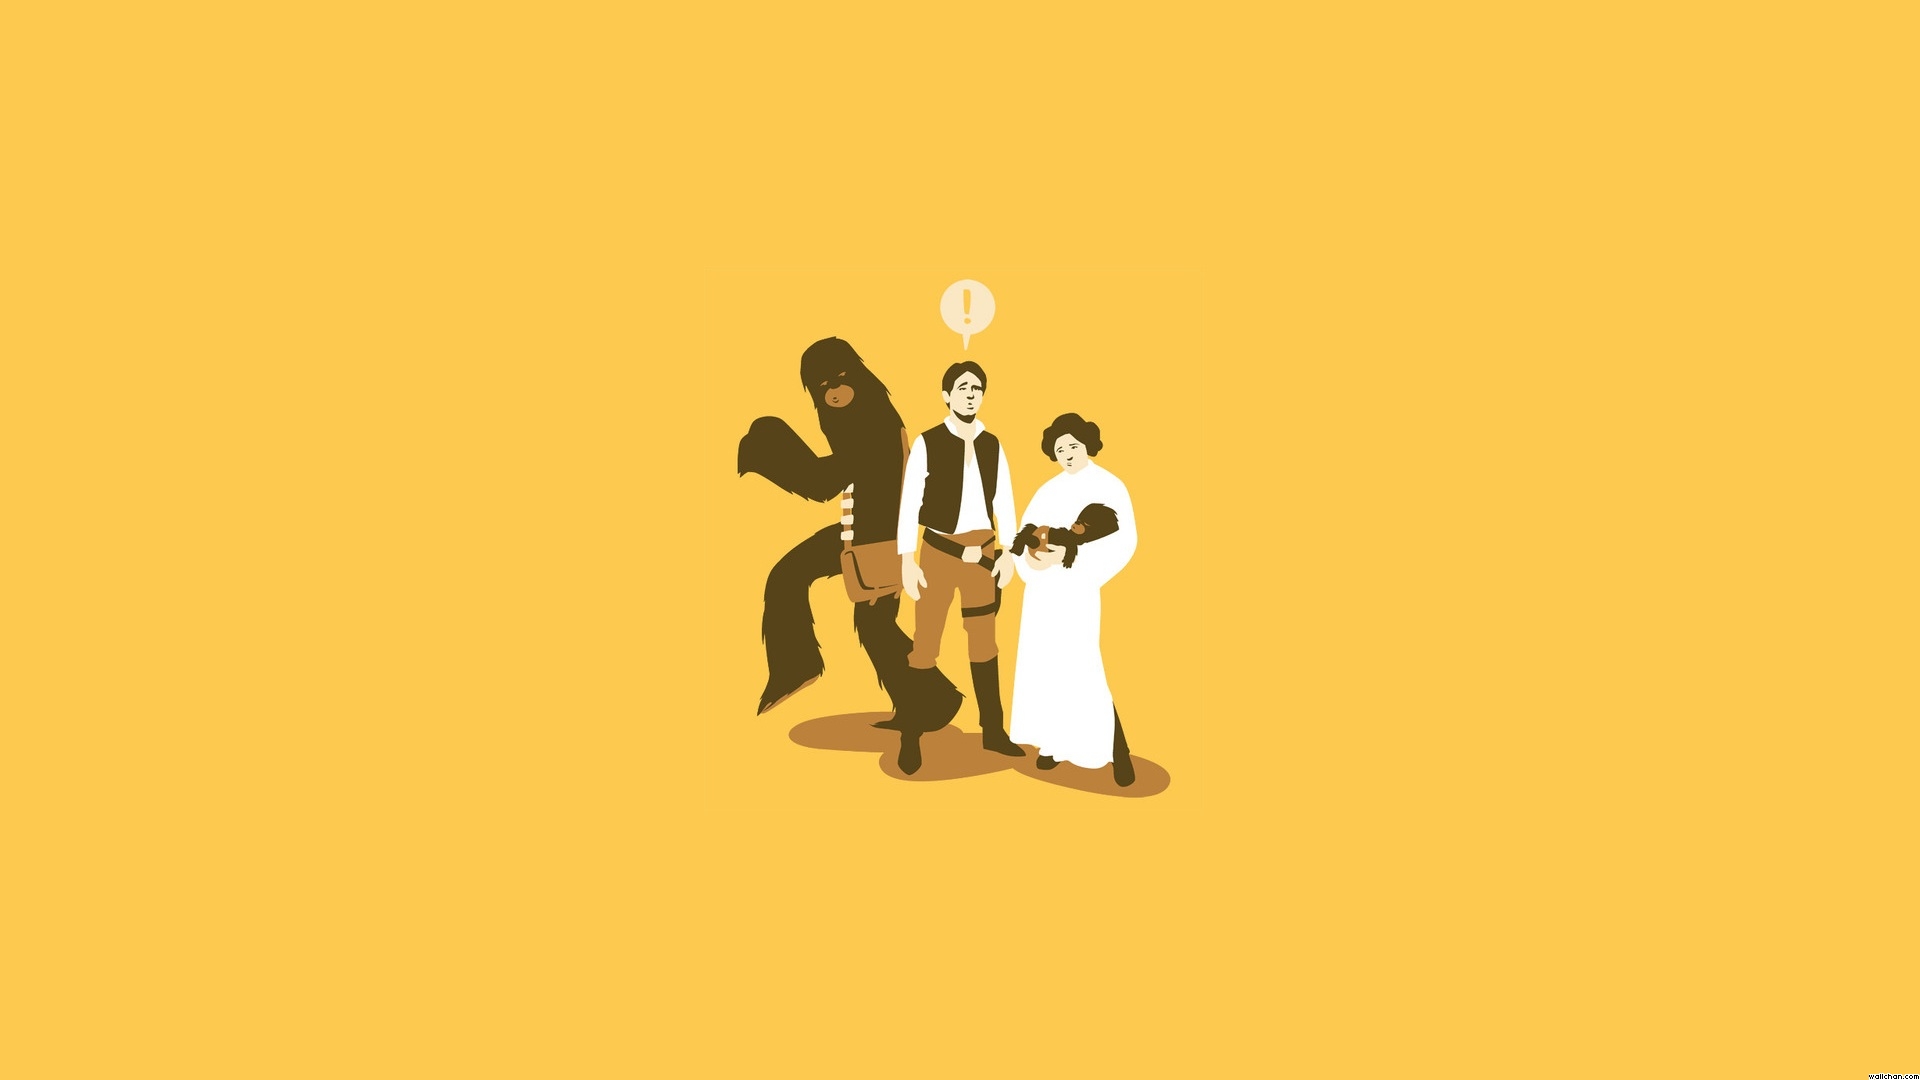 FUNNY - Star Wars Comedy Wallpaper (26697682) - Fanpop